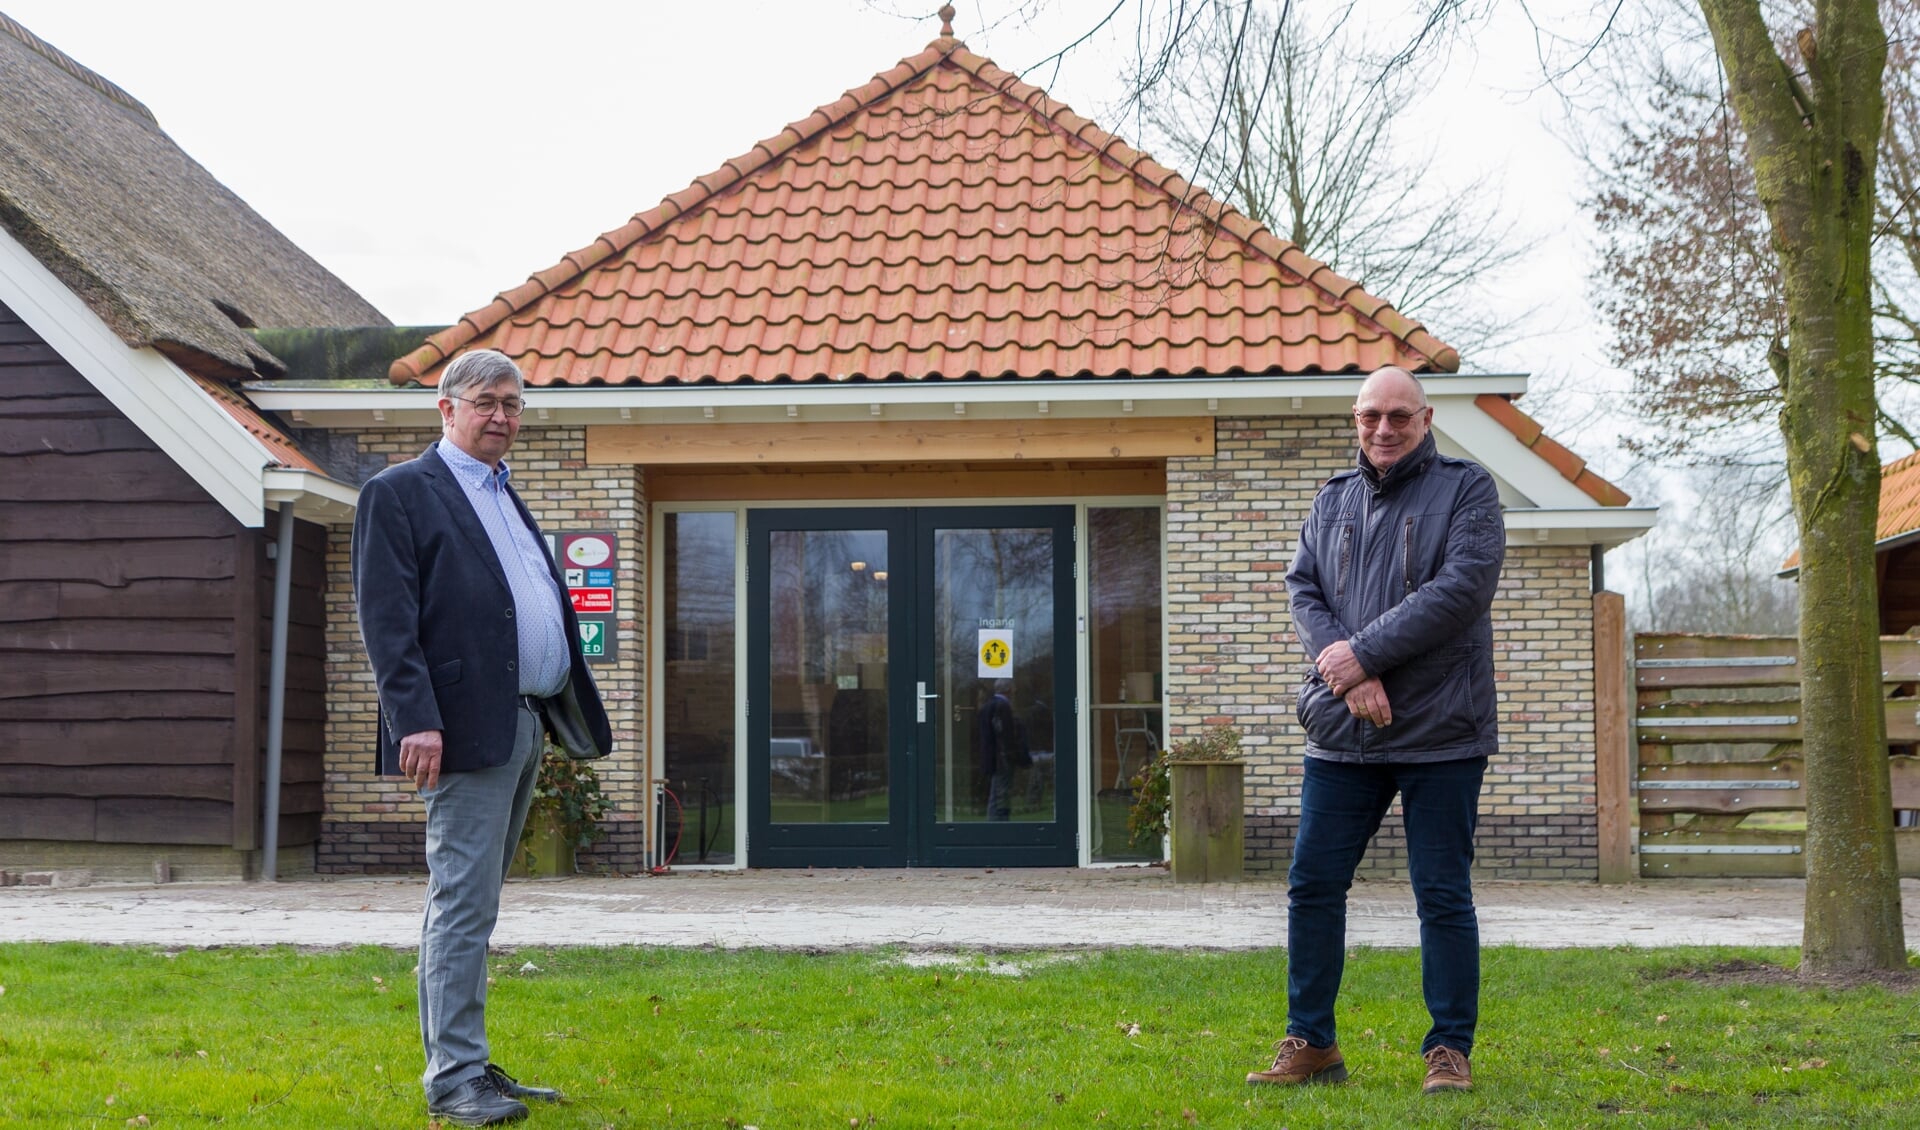 Jarig Wijma en Freerk de Vries voor de nieuwe ontvangstruimte van De Spitkeet.